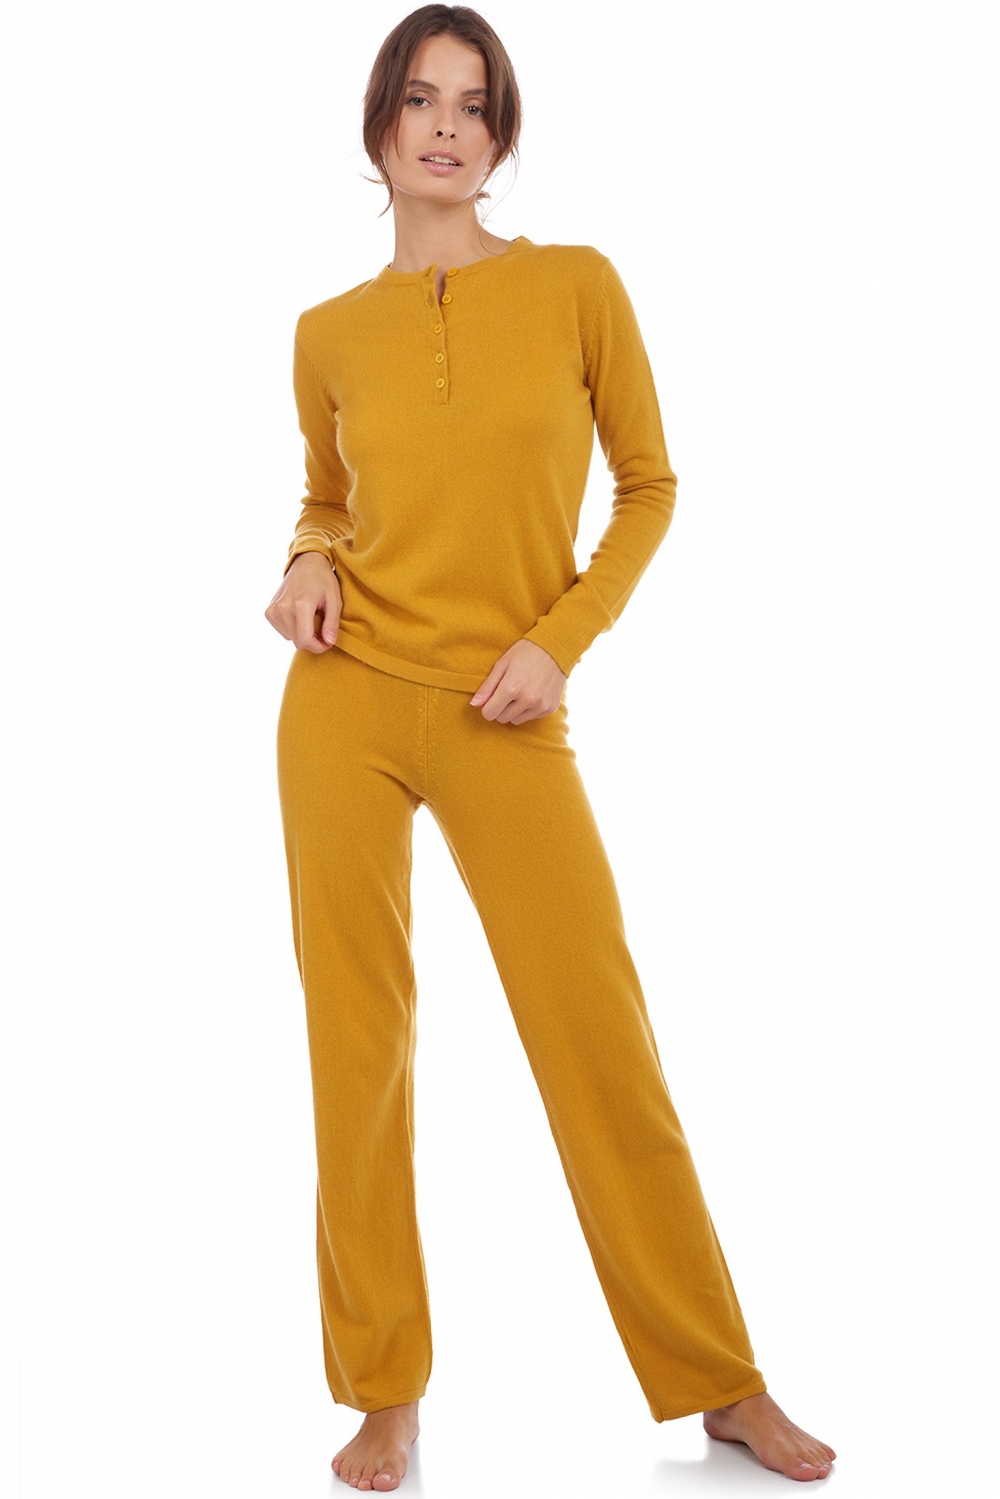 Cachemire pyjama femme loan moutarde 2xl